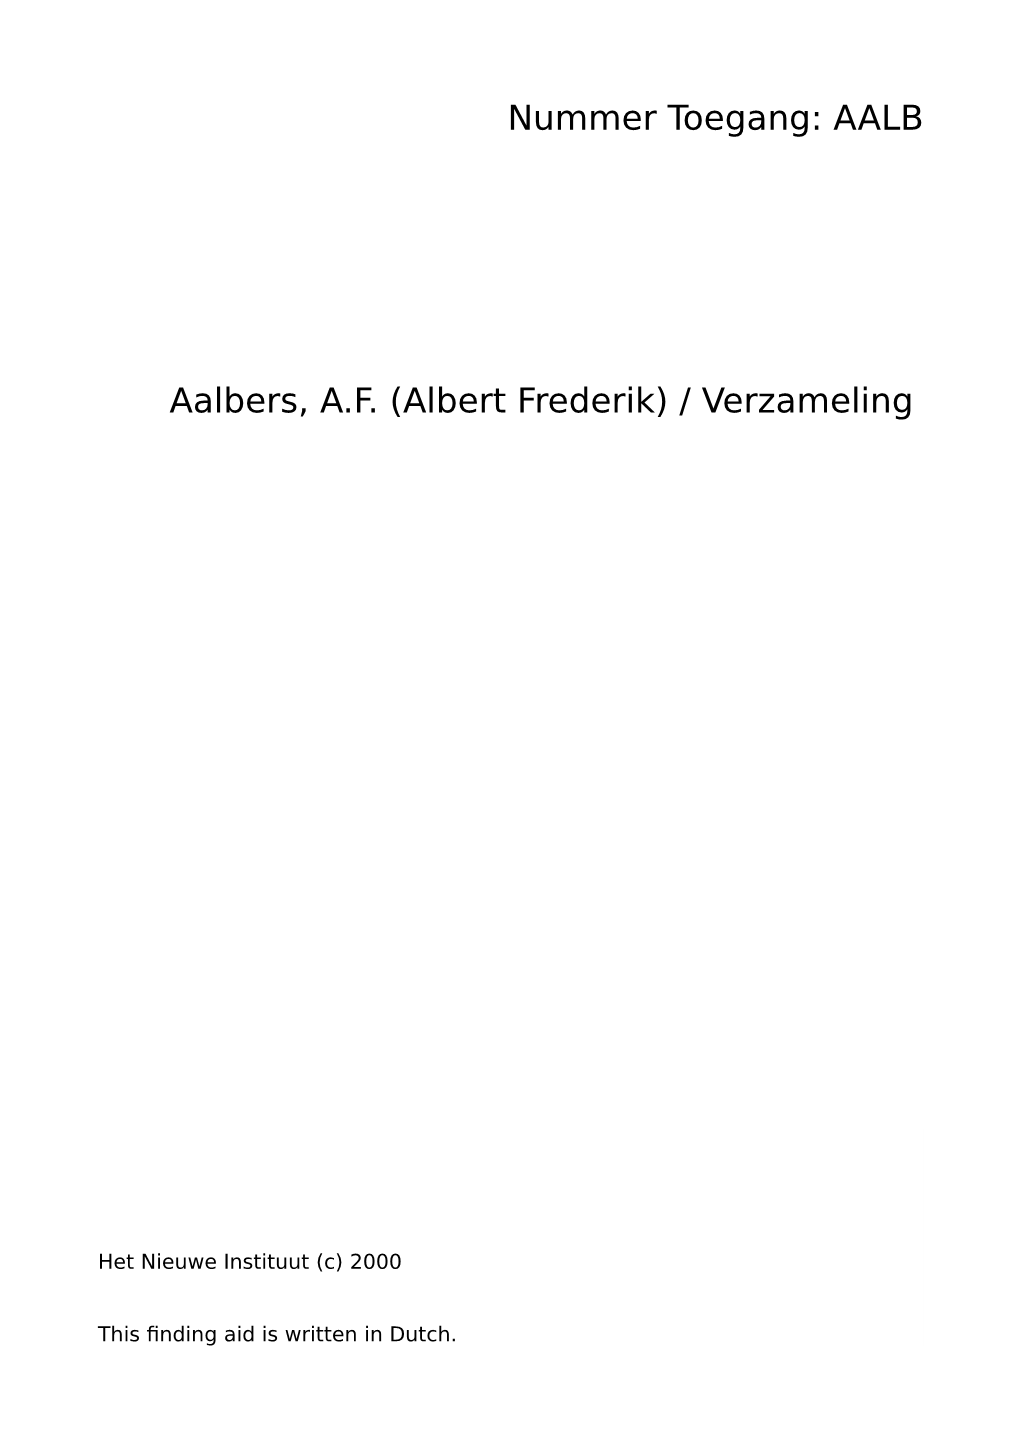 Aalbers, A.F. (Albert Frederik) / Verzameling